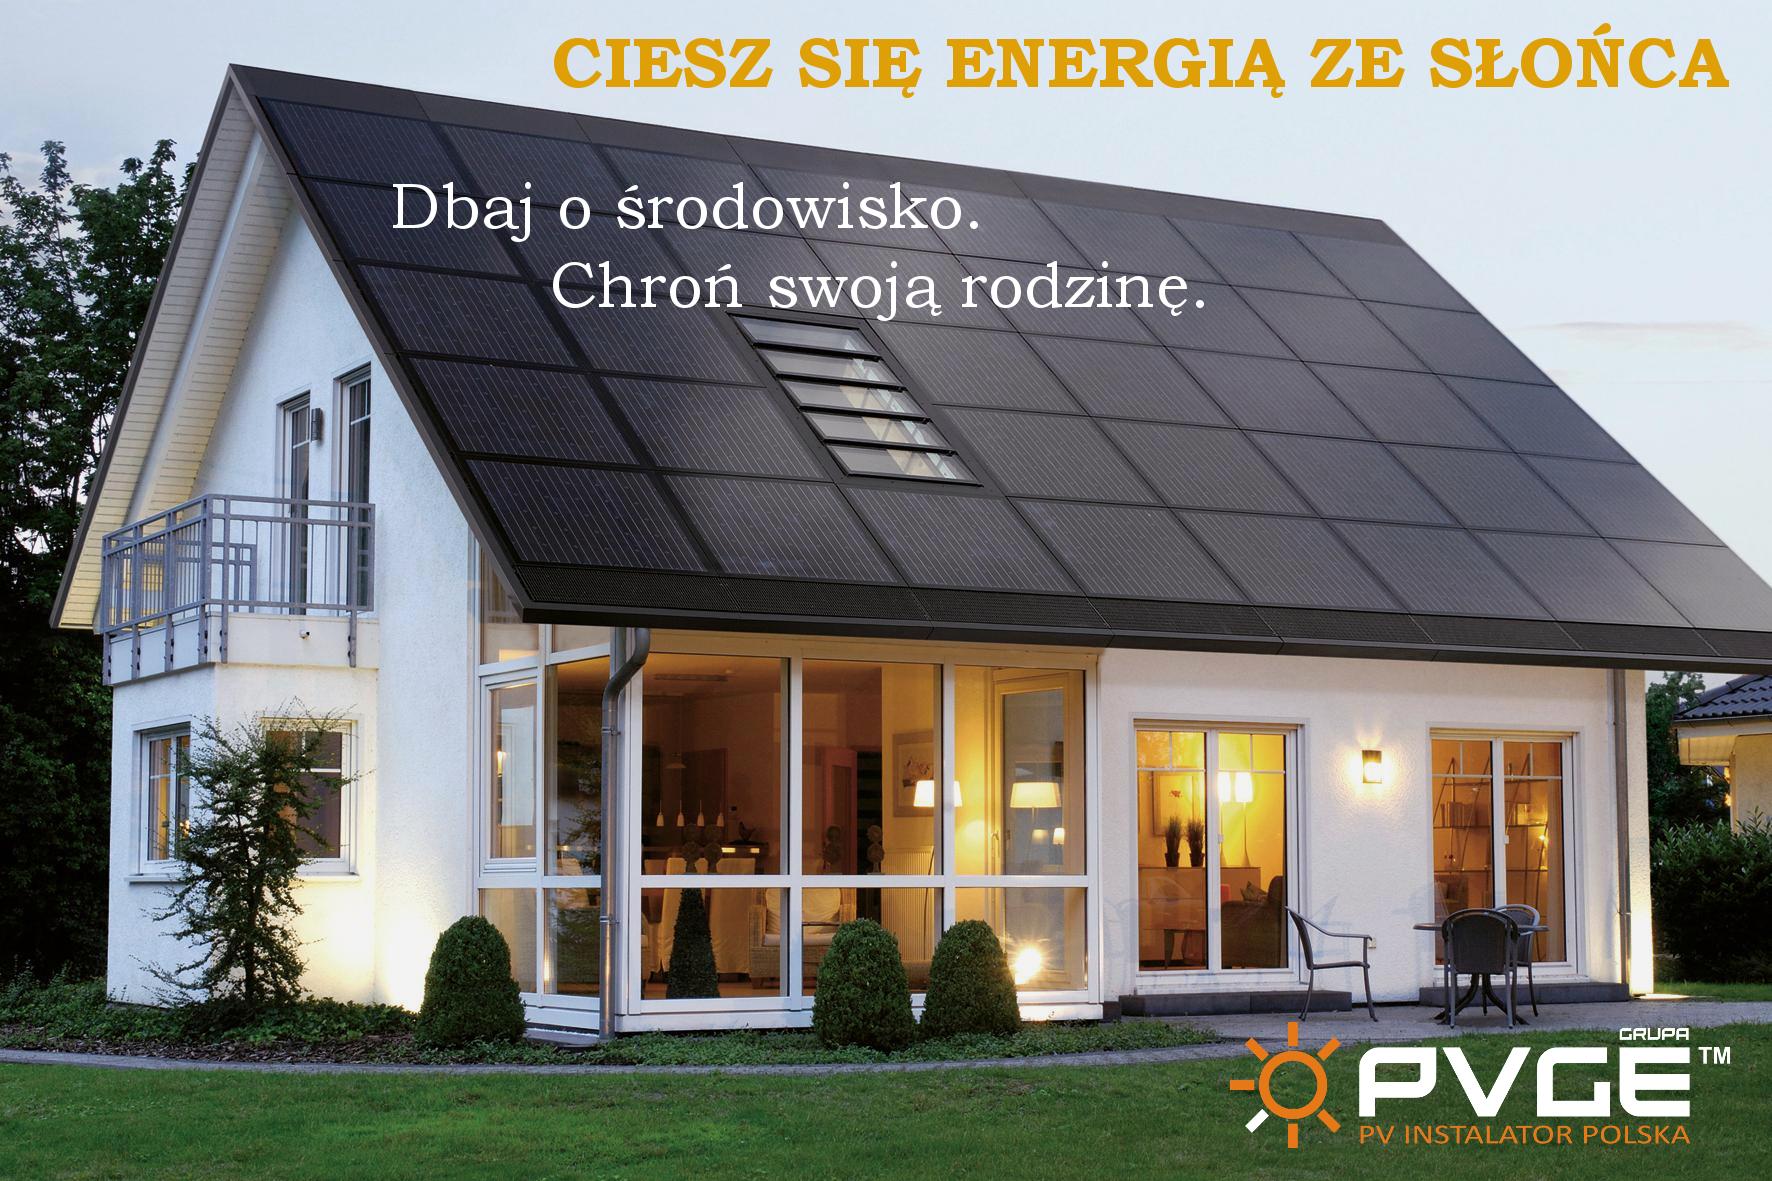 Grupa PVGE "Najlepsza energia pod słońcem"